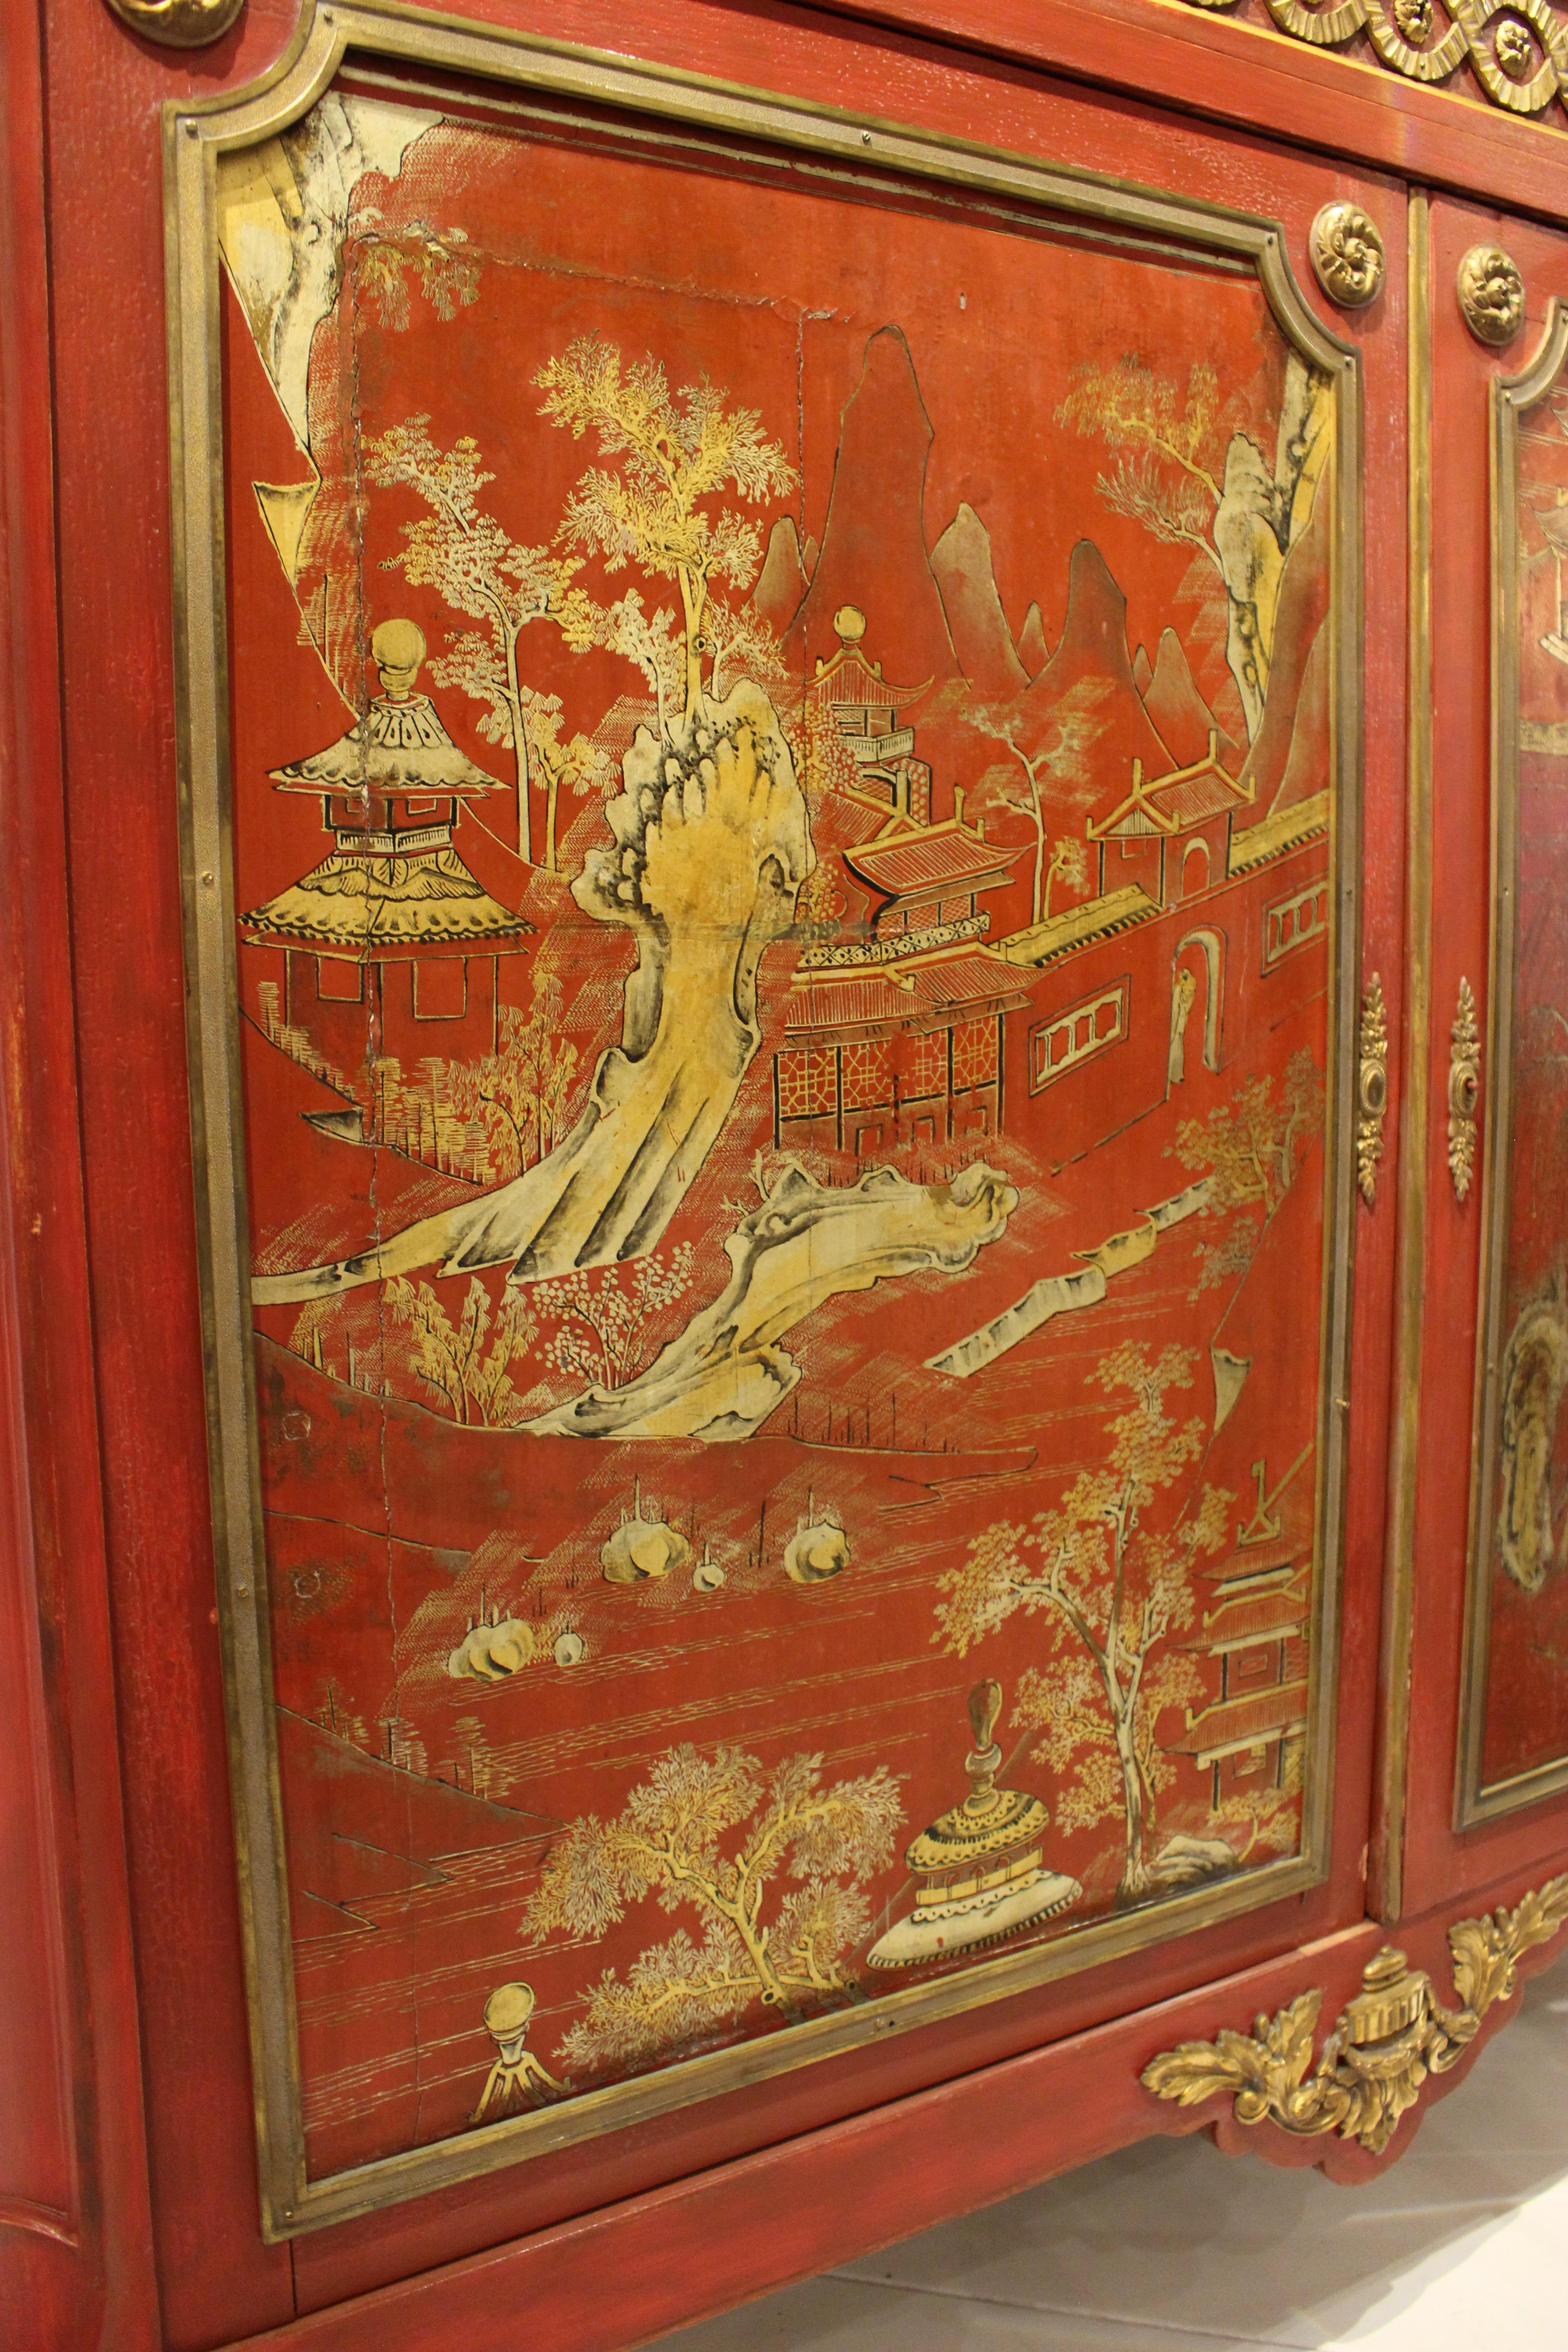 Meuble d'appoint de style Louis XVI, rectangulaire, monté en bronze doré, peint en chinoiserie rouge et or, avec un plateau en marbre saumon au-dessus d'un tiroir en frise et une paire de portes de placard sur des pieds cabriole se terminant par des